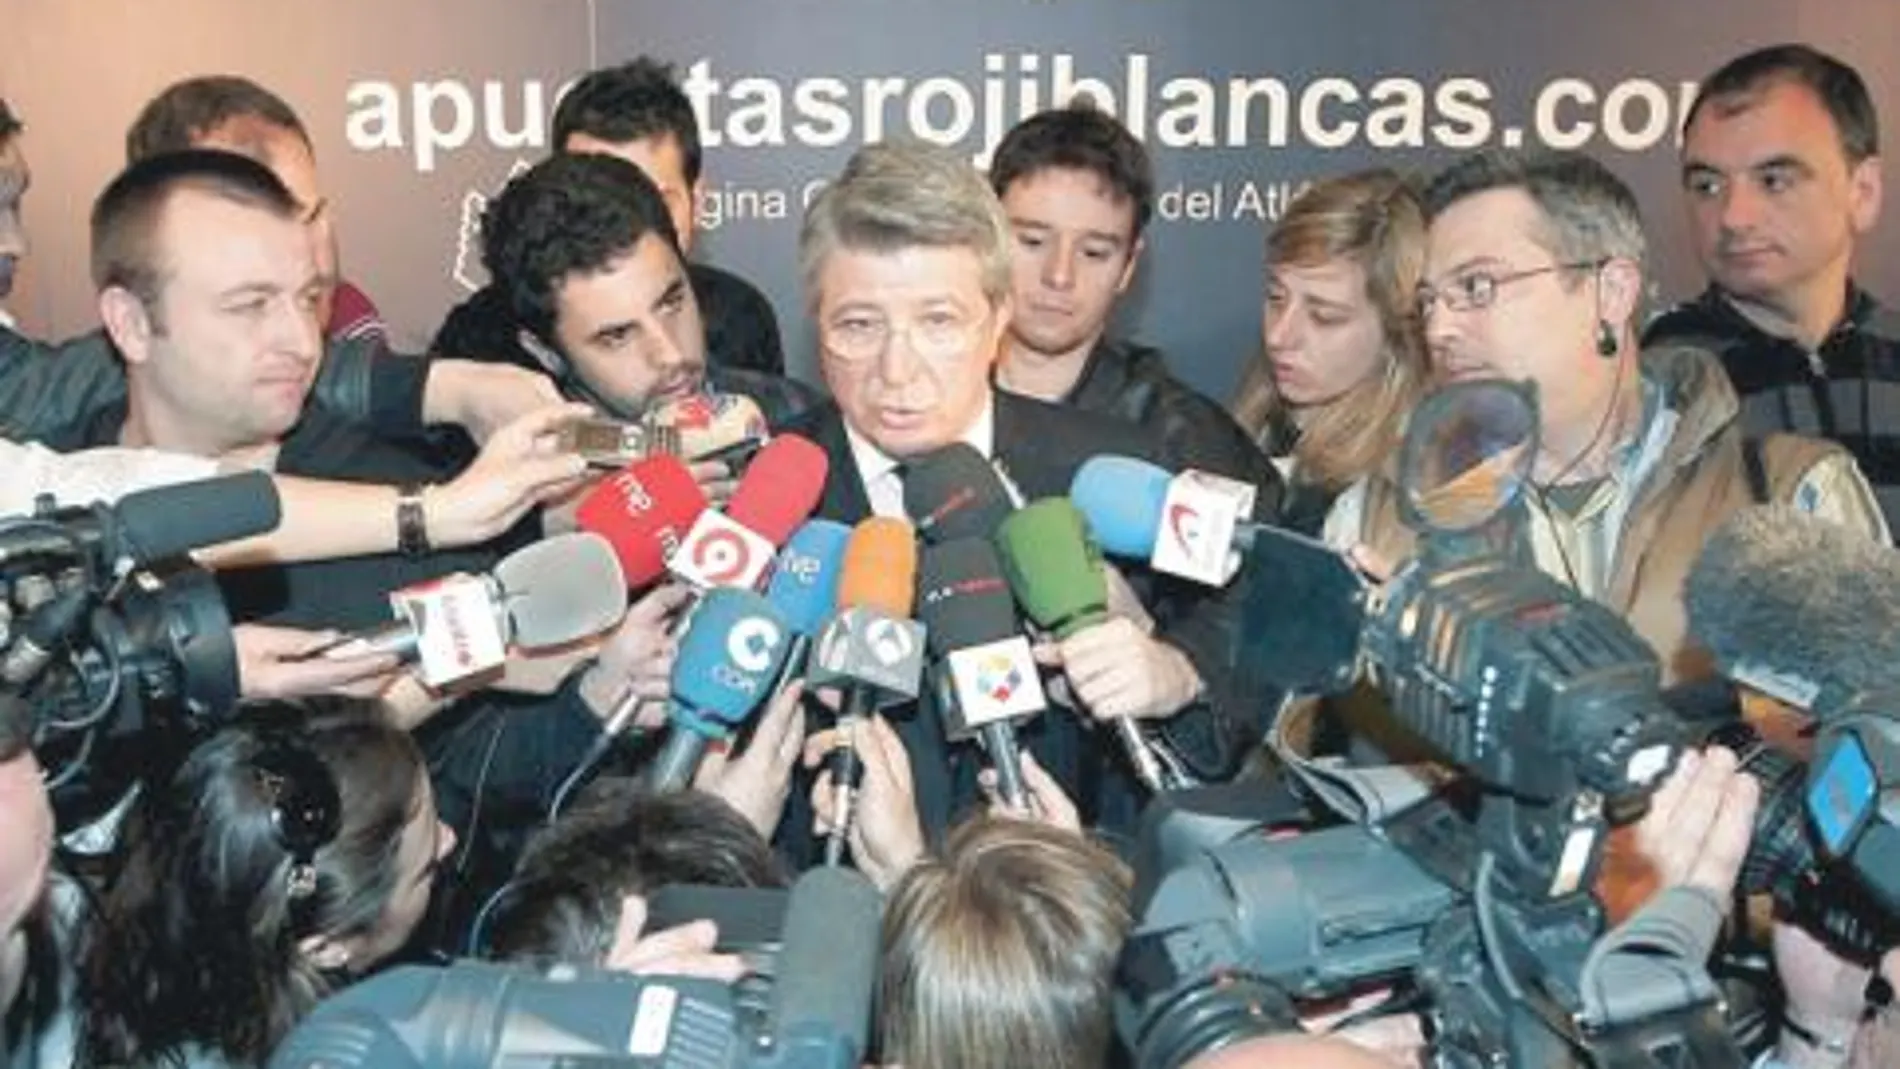 El presidente del Atlético de Madrid, Enrique Cerezo, ayer, rodeado de periodistas